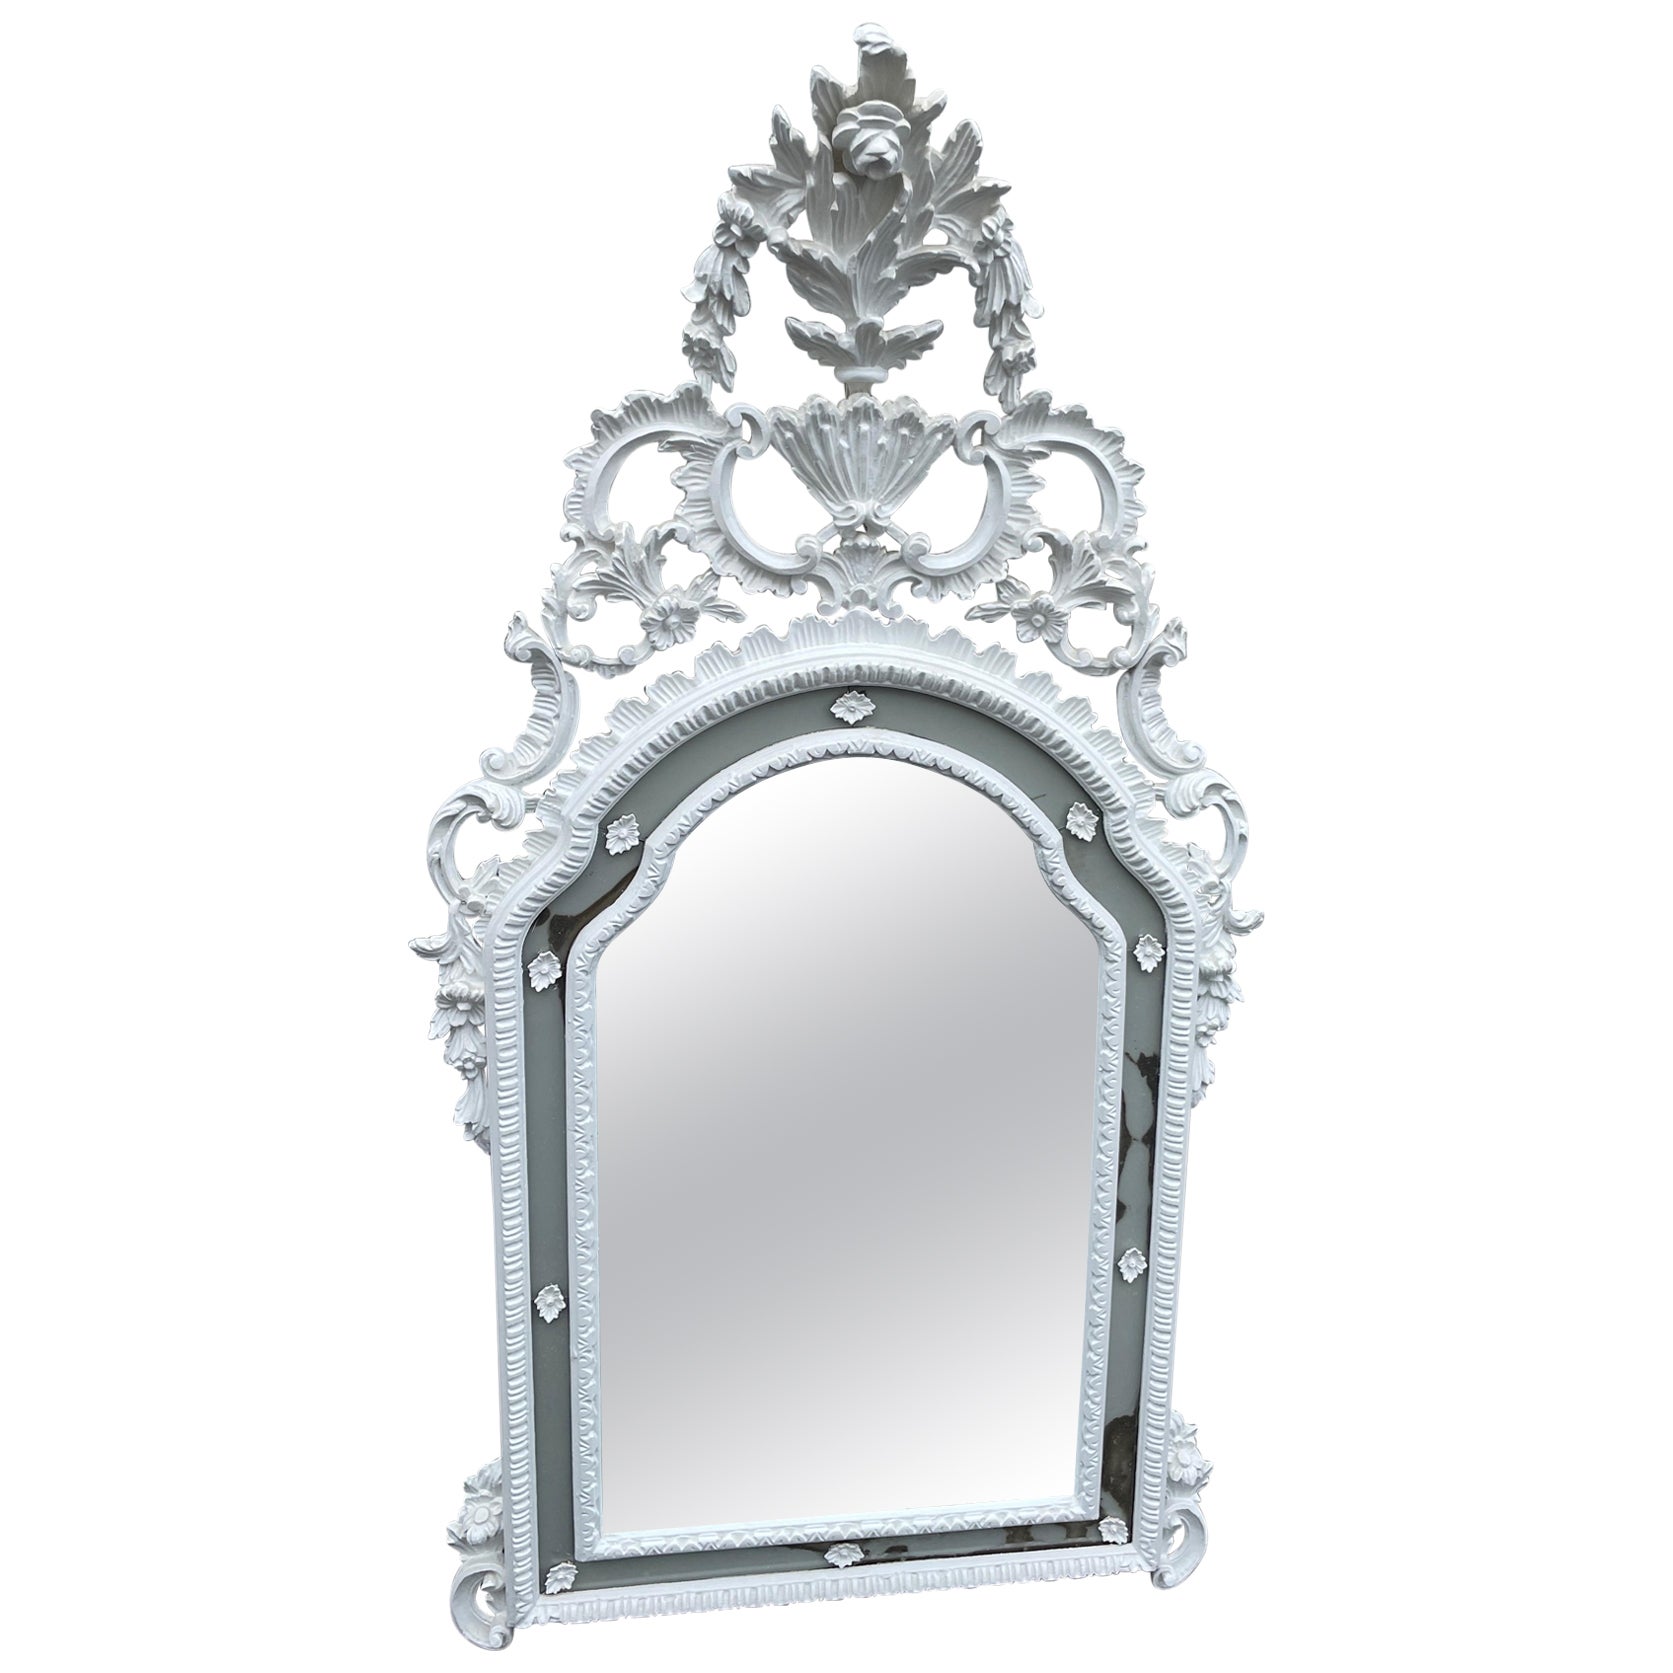 Grand miroir rocococo italien sculpté et peint